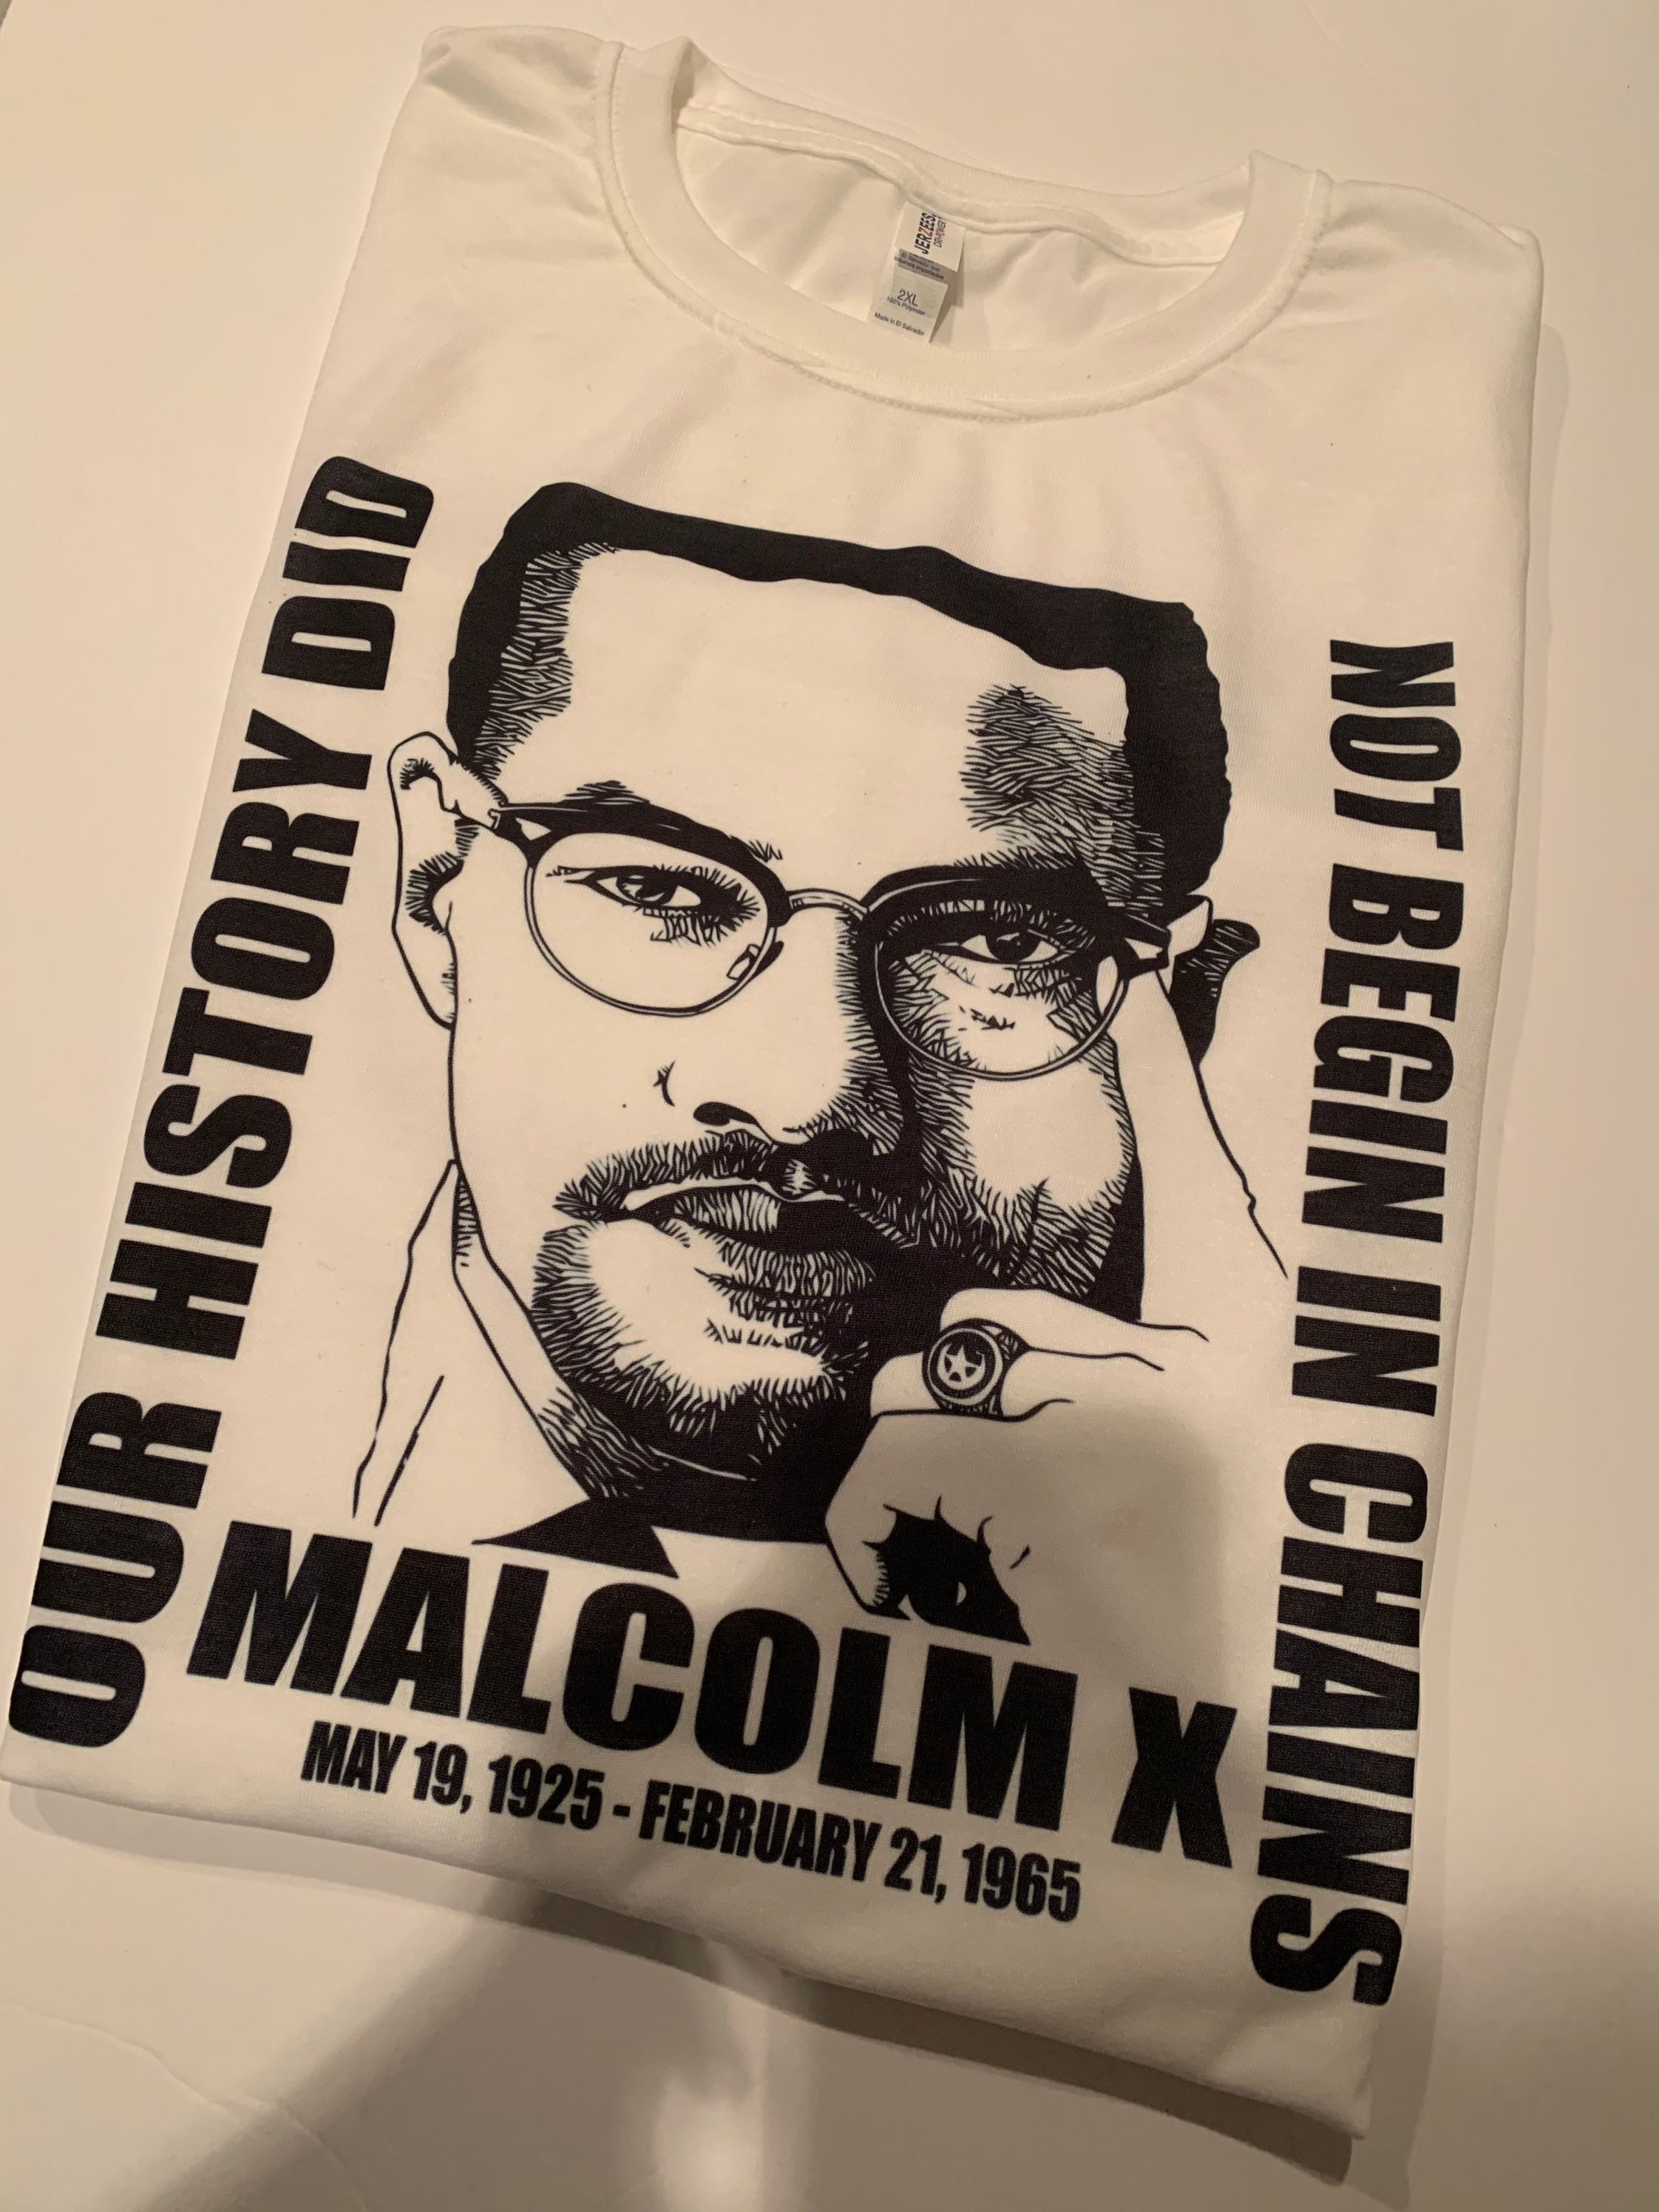 Malcolm X Shirt | Etsy